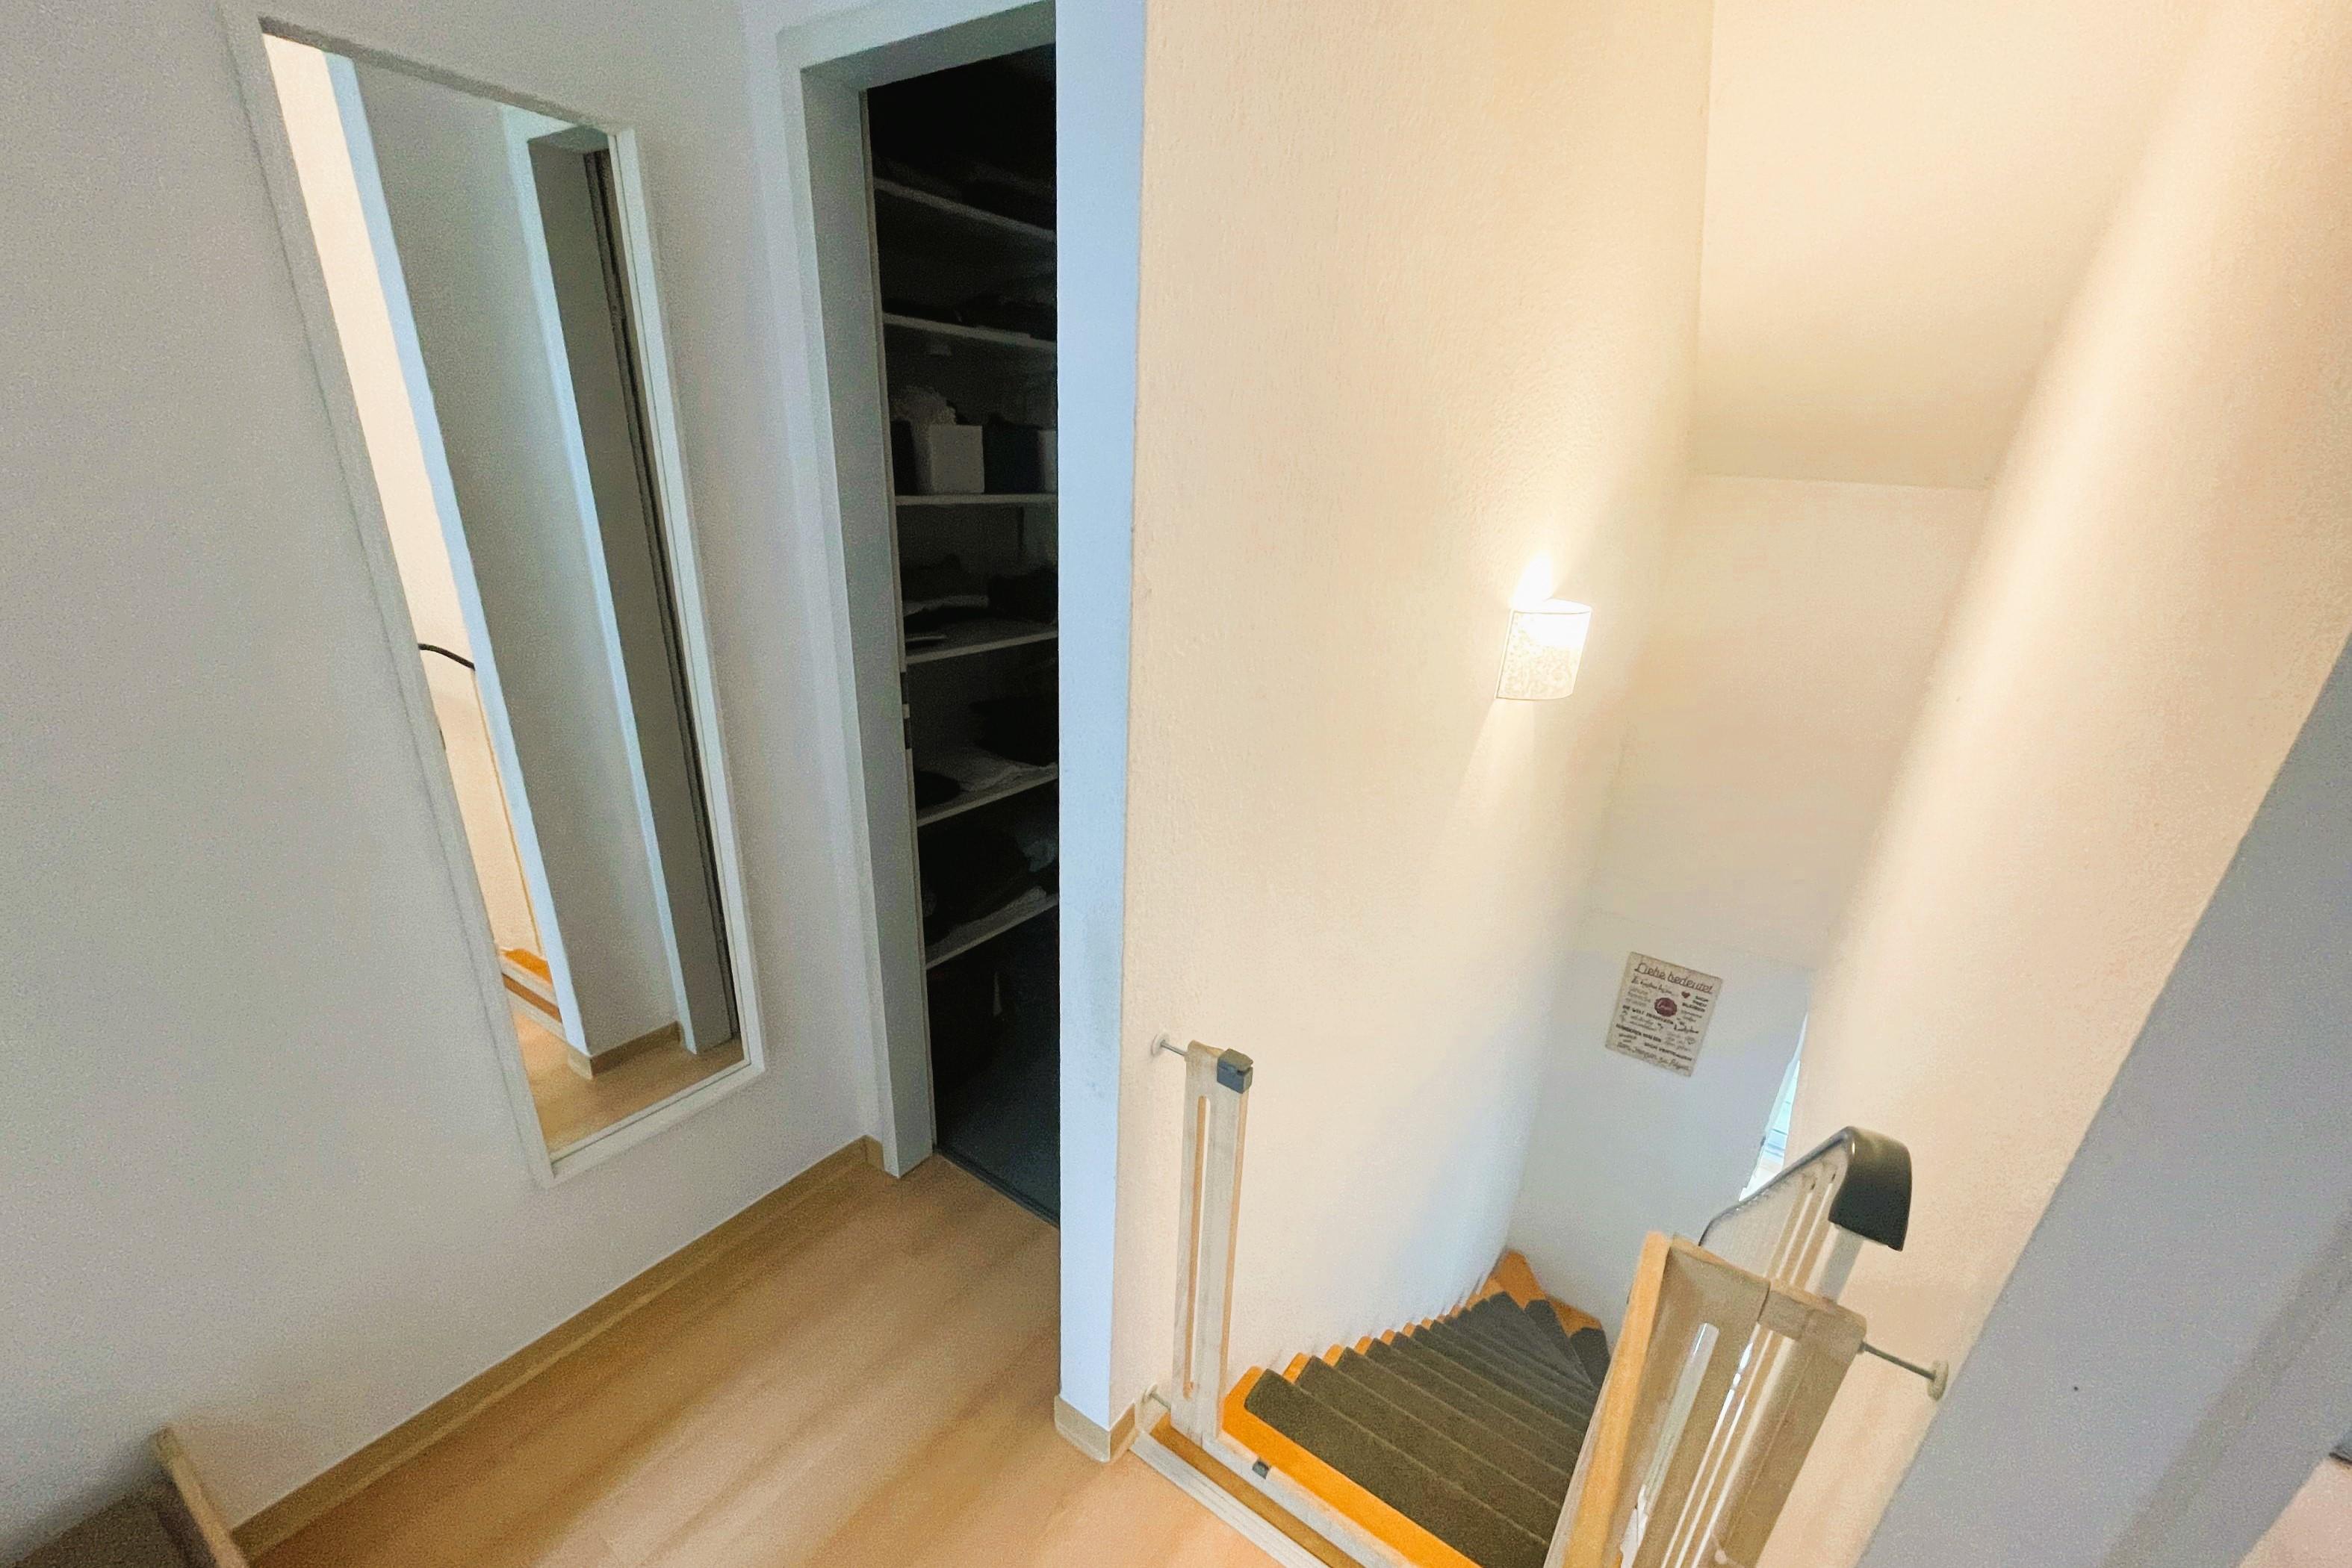 Immobilie Nr.0474 - 3-Zimmer-Maisonette auf 2.OG+DG, mit Balkon u. Stellplatz - Bild 11.jpg